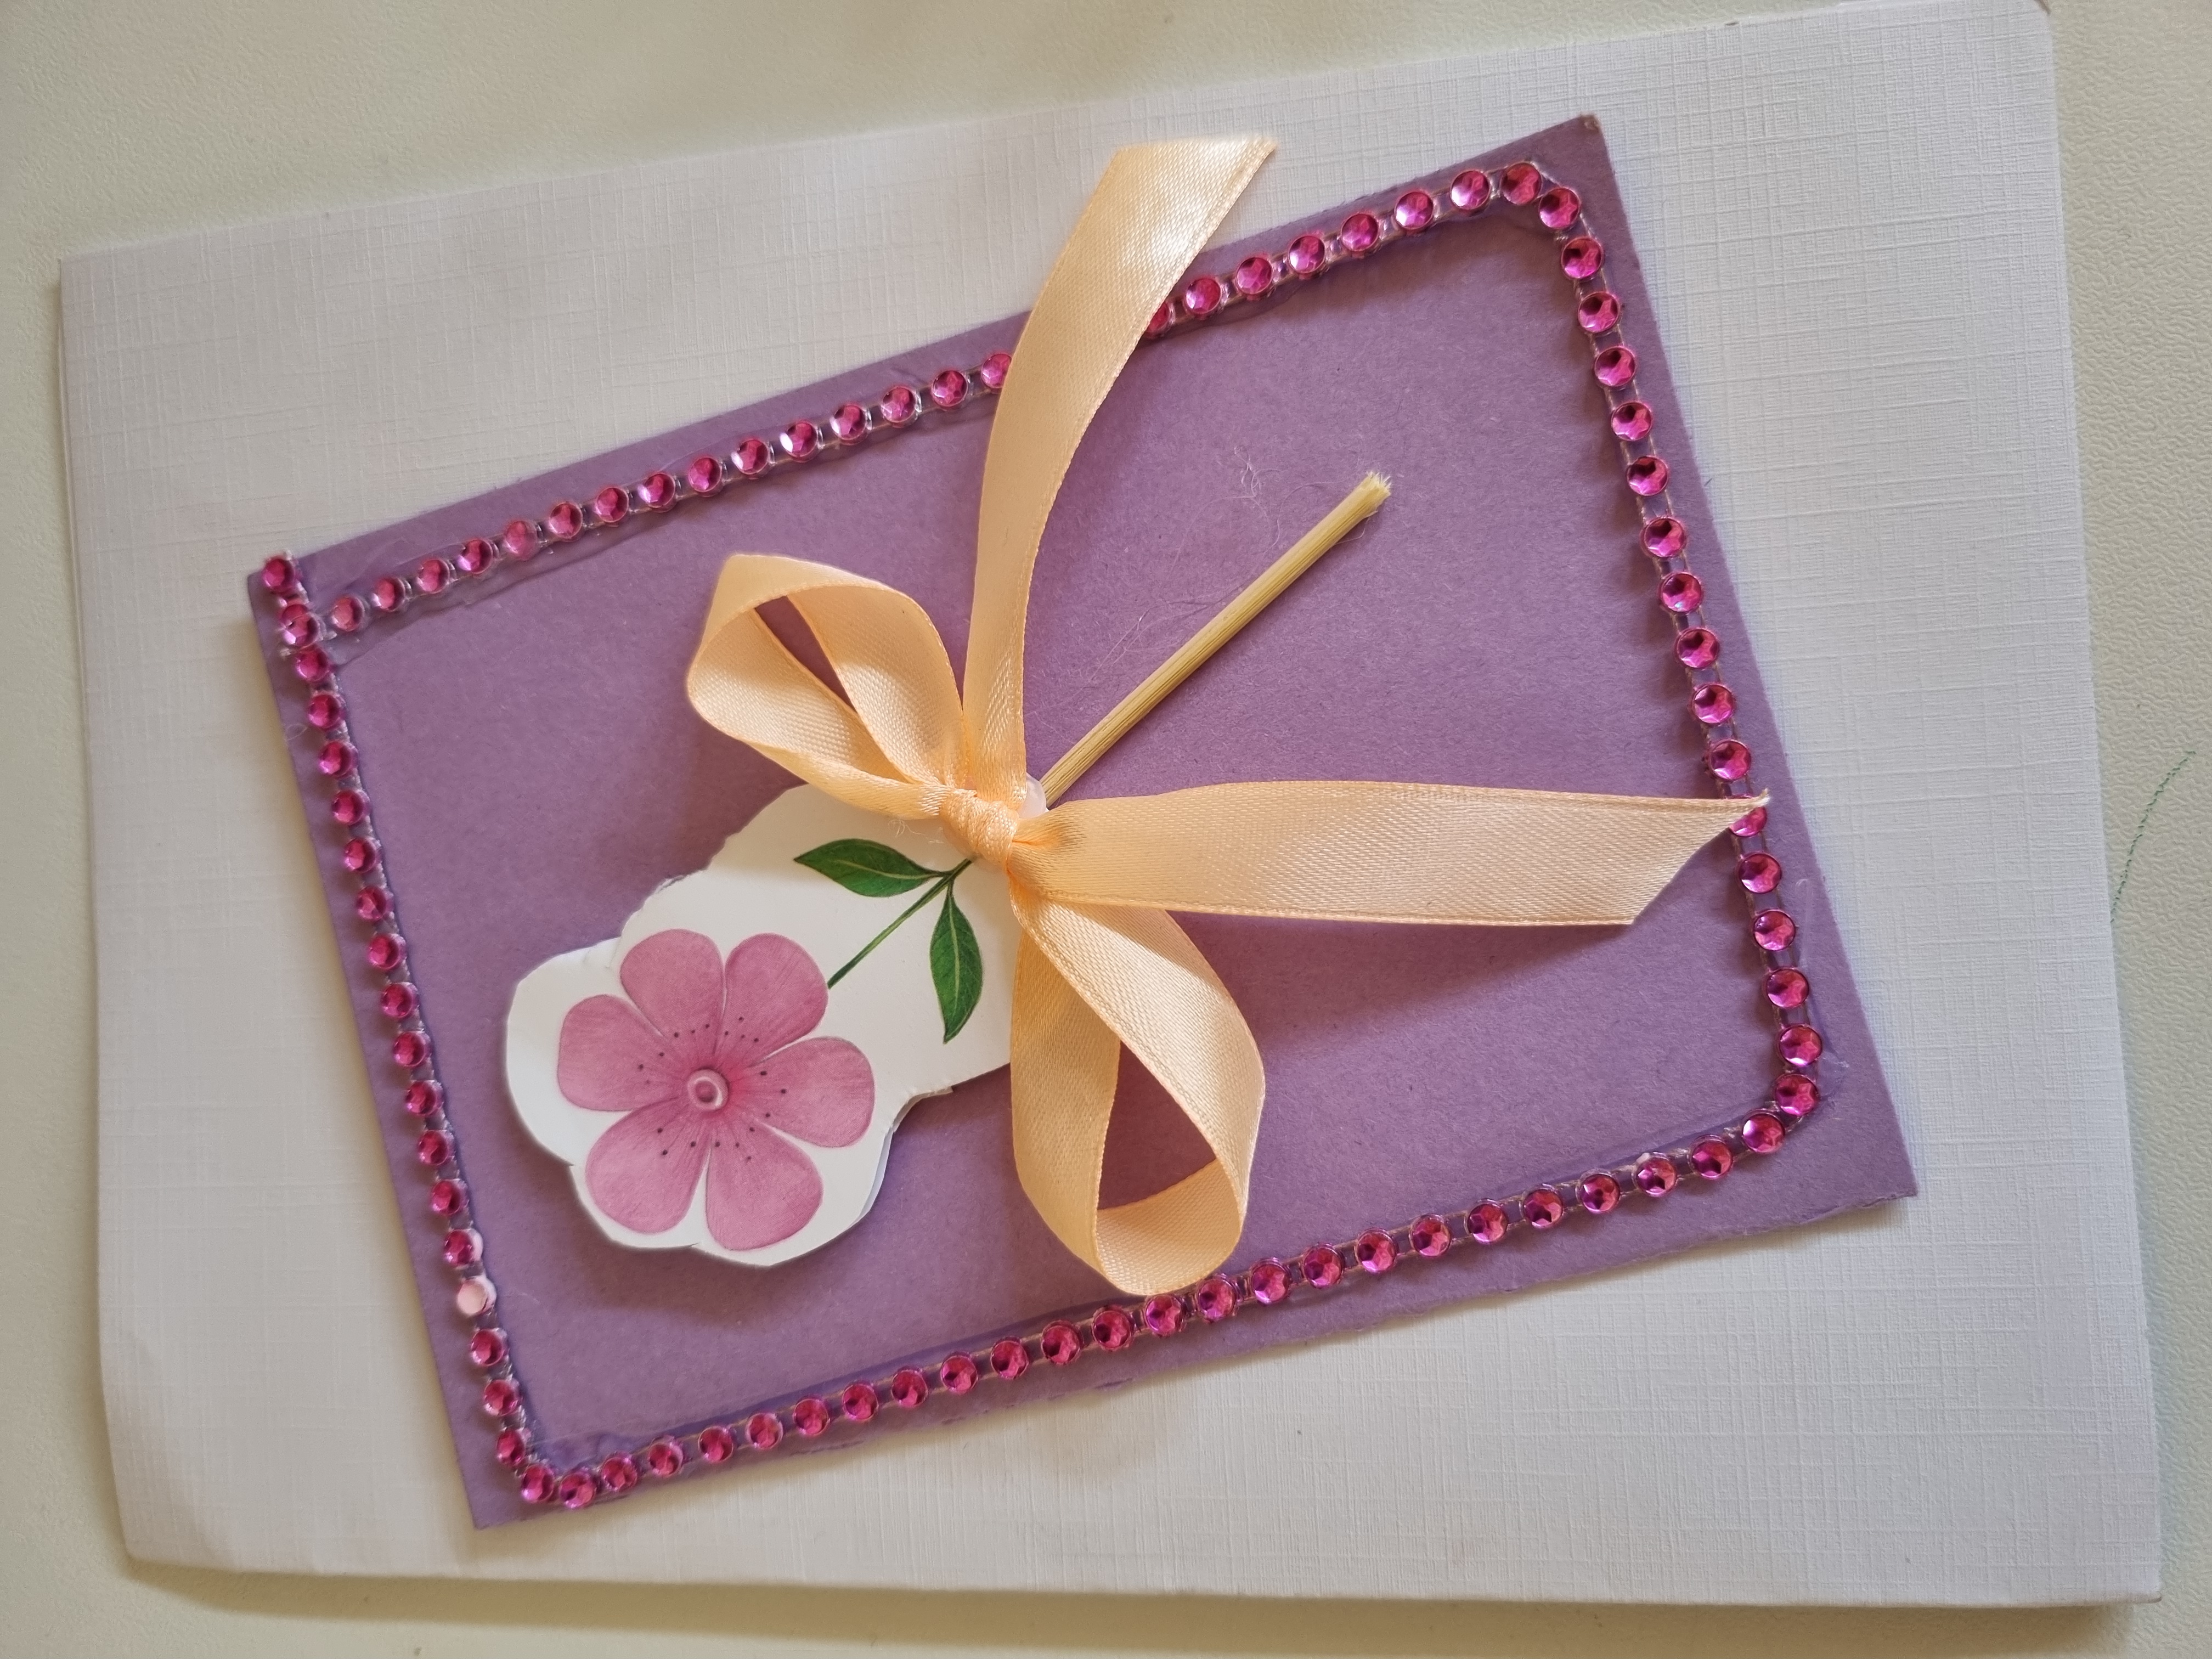 Na jasnym tle znajduje się praca plastyczna z papieru i innych materiałów, przedstawiajaca fioletowy kwiat, obwiązany kokardą.